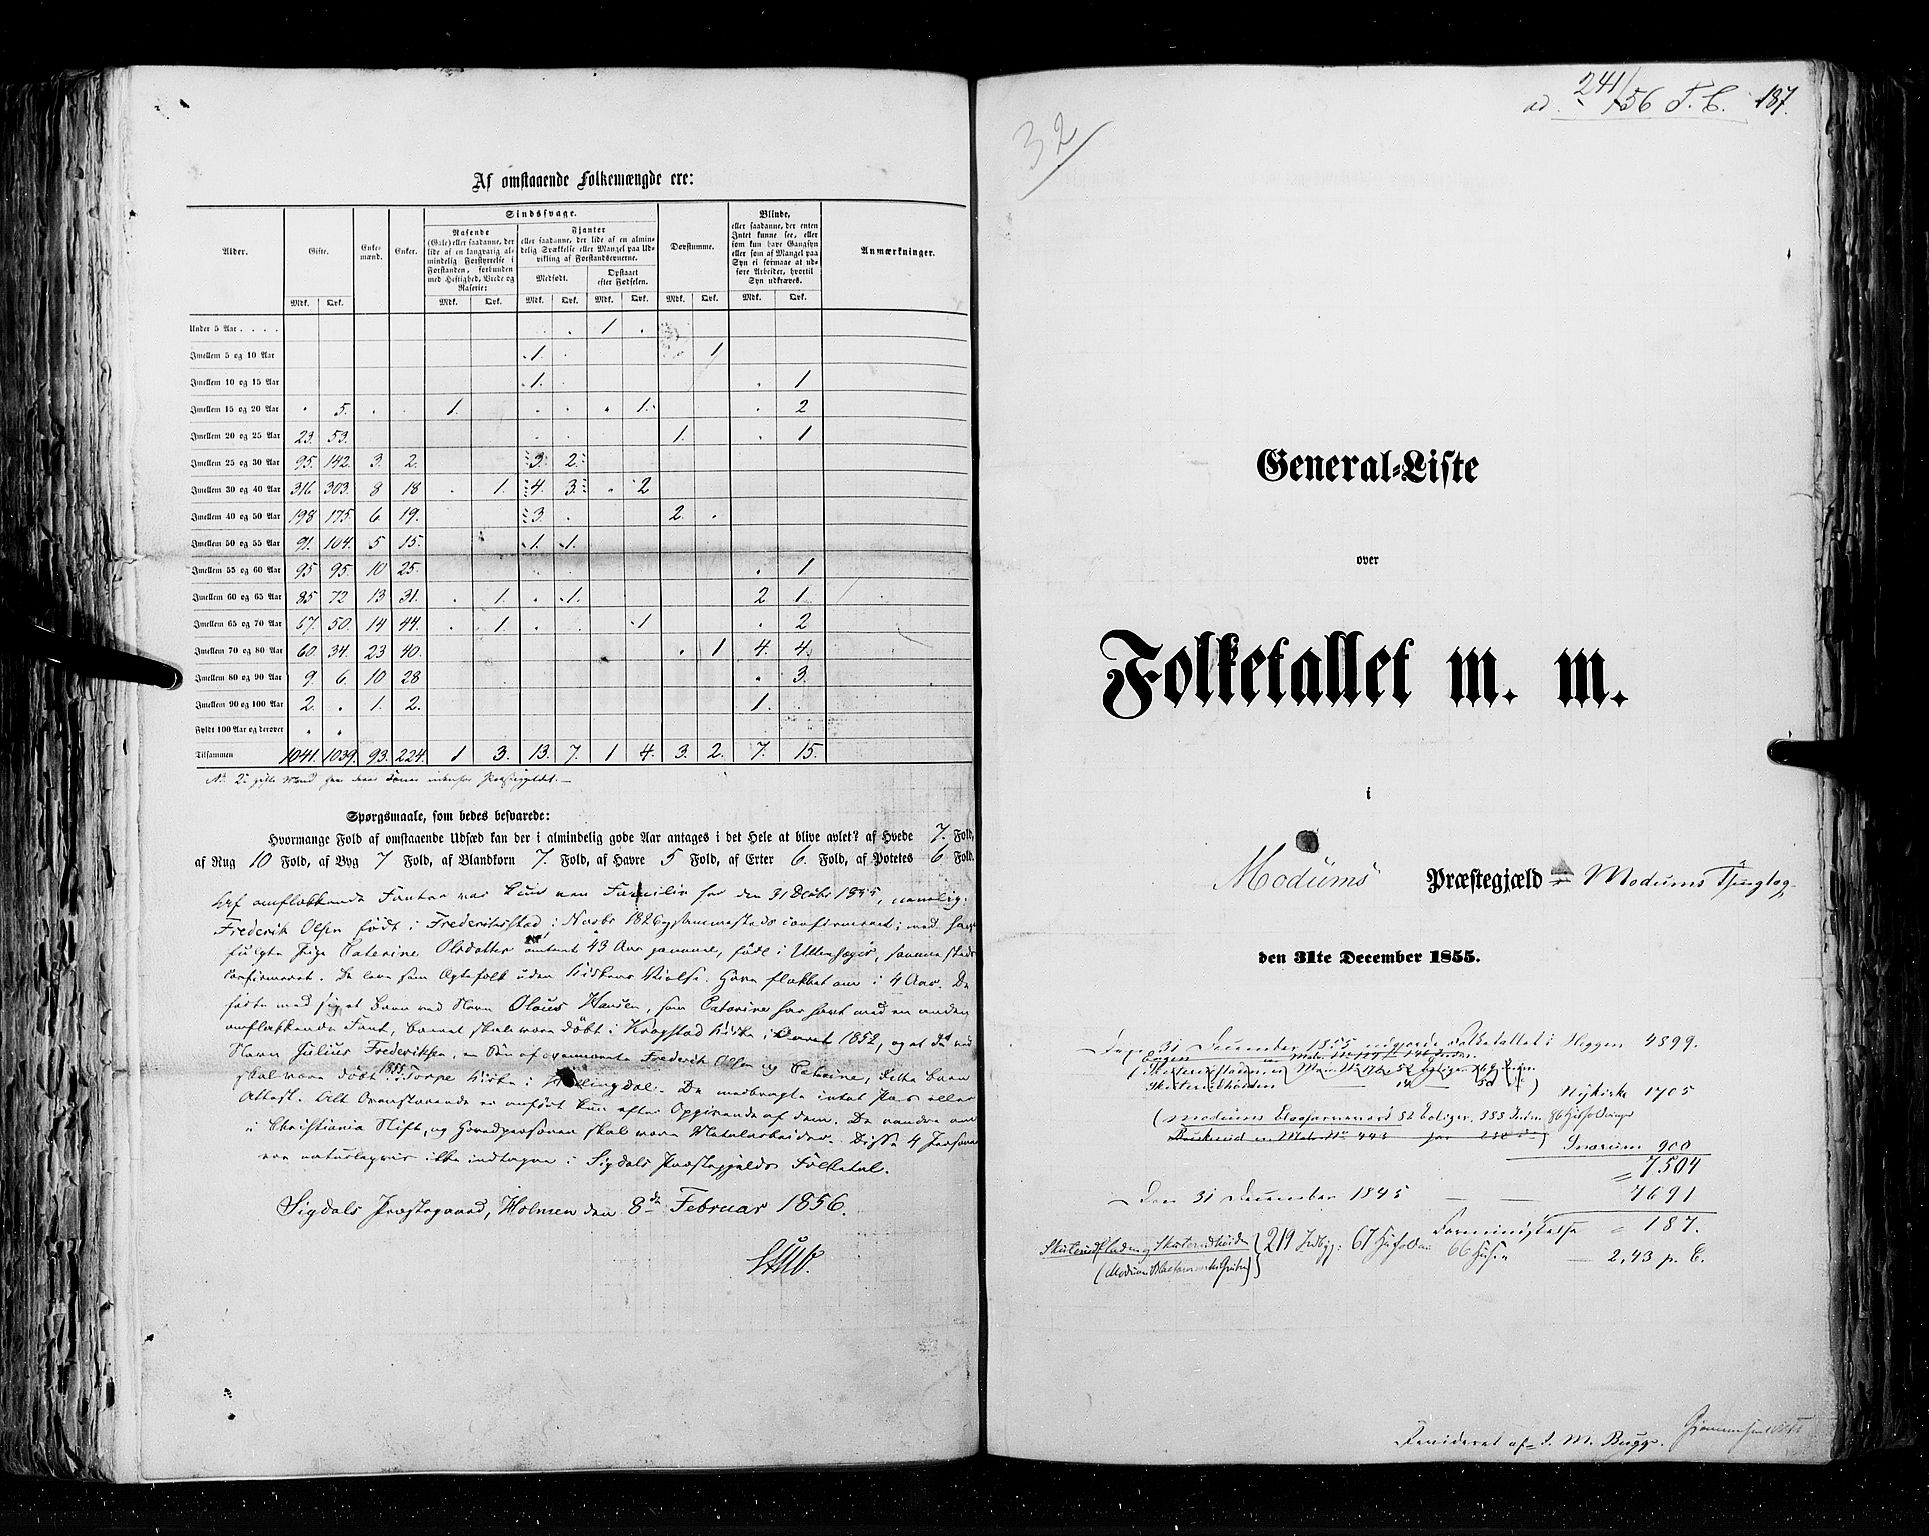 RA, Folketellingen 1855, bind 2: Kristians amt, Buskerud amt og Jarlsberg og Larvik amt, 1855, s. 187